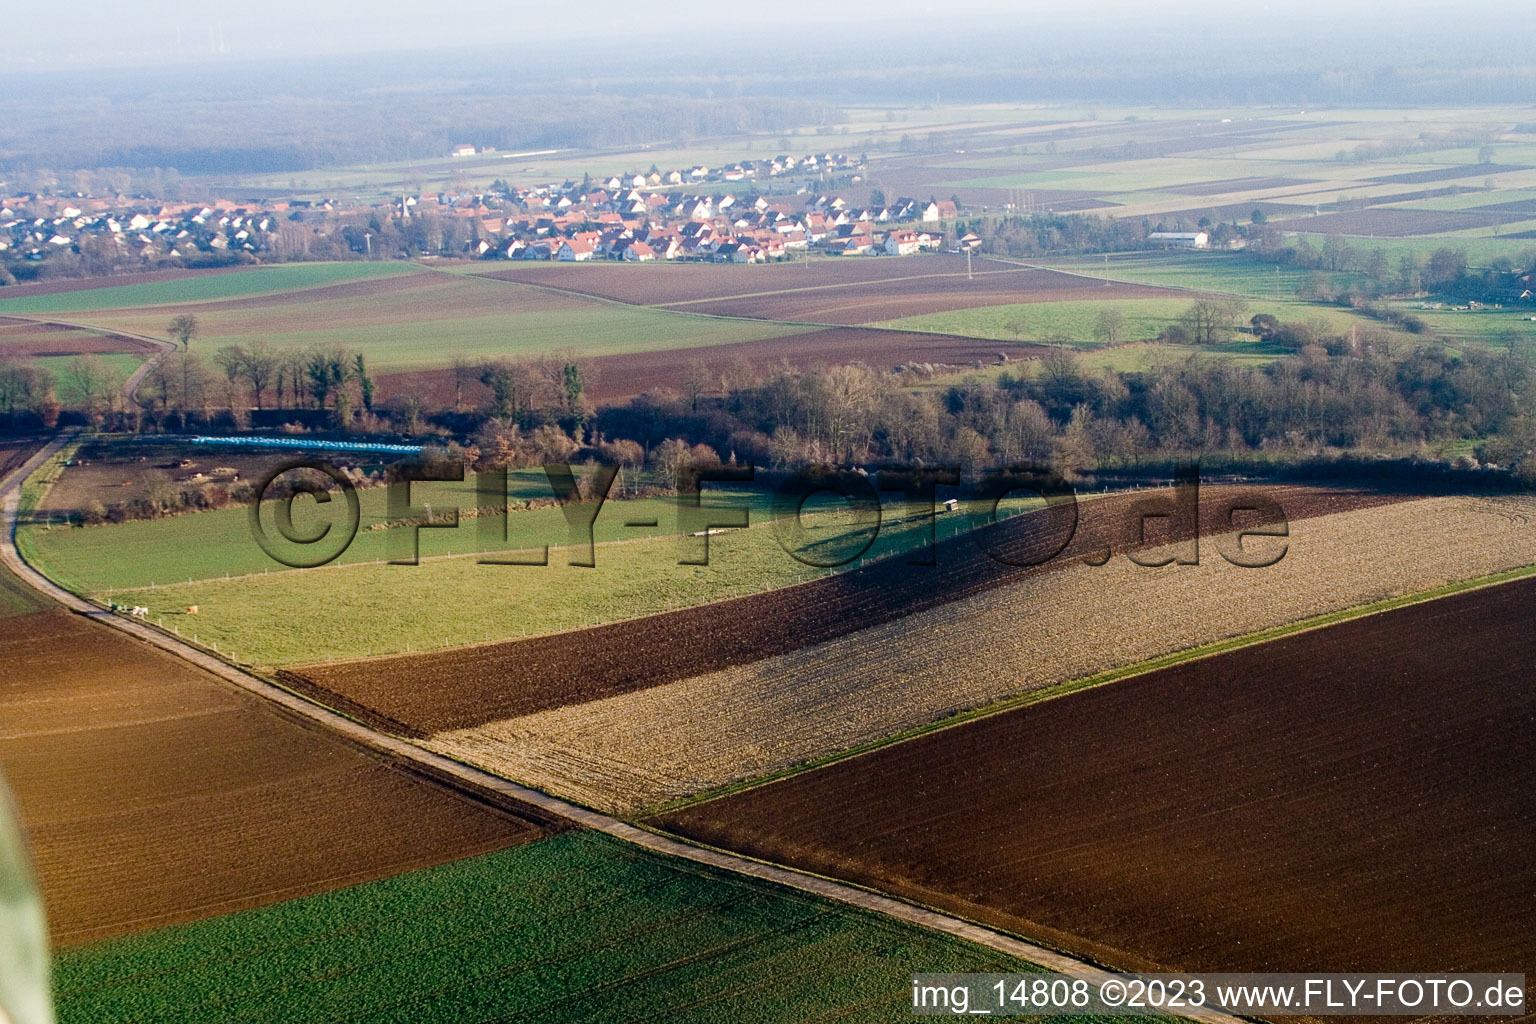 Freckenfeld dans le département Rhénanie-Palatinat, Allemagne vu d'un drone